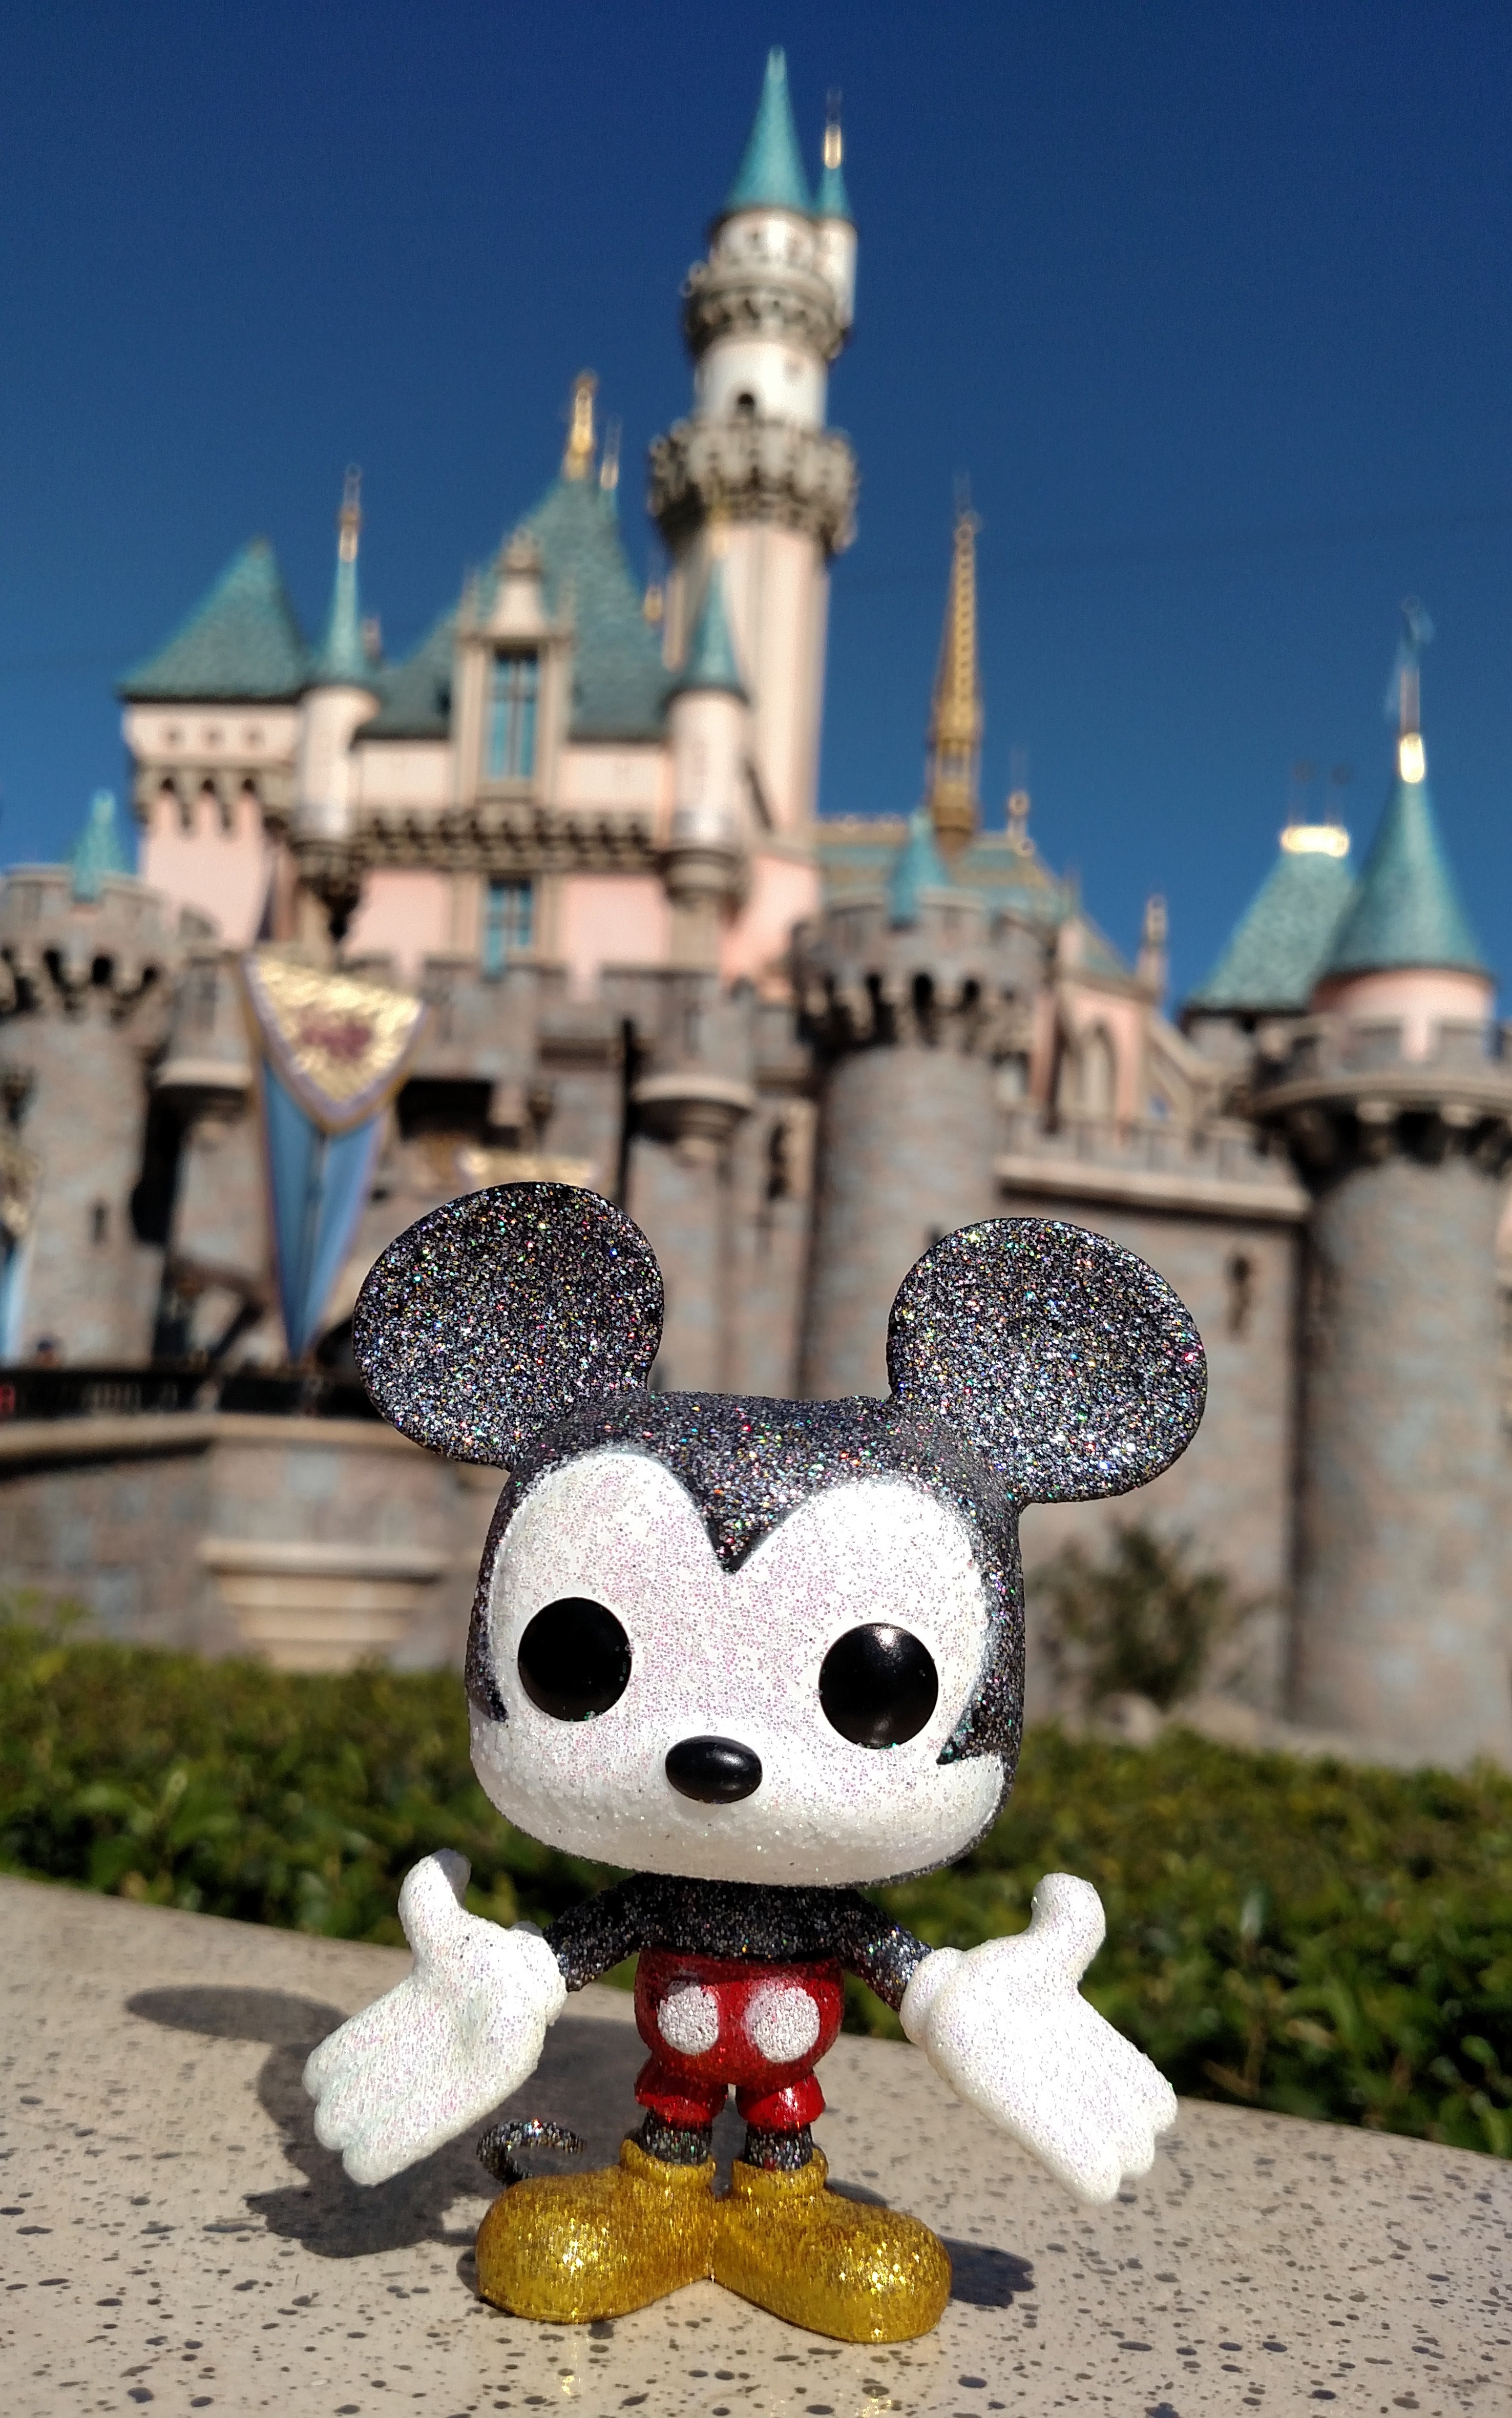 Disneyland castle mickey mouse funko pop.jpg